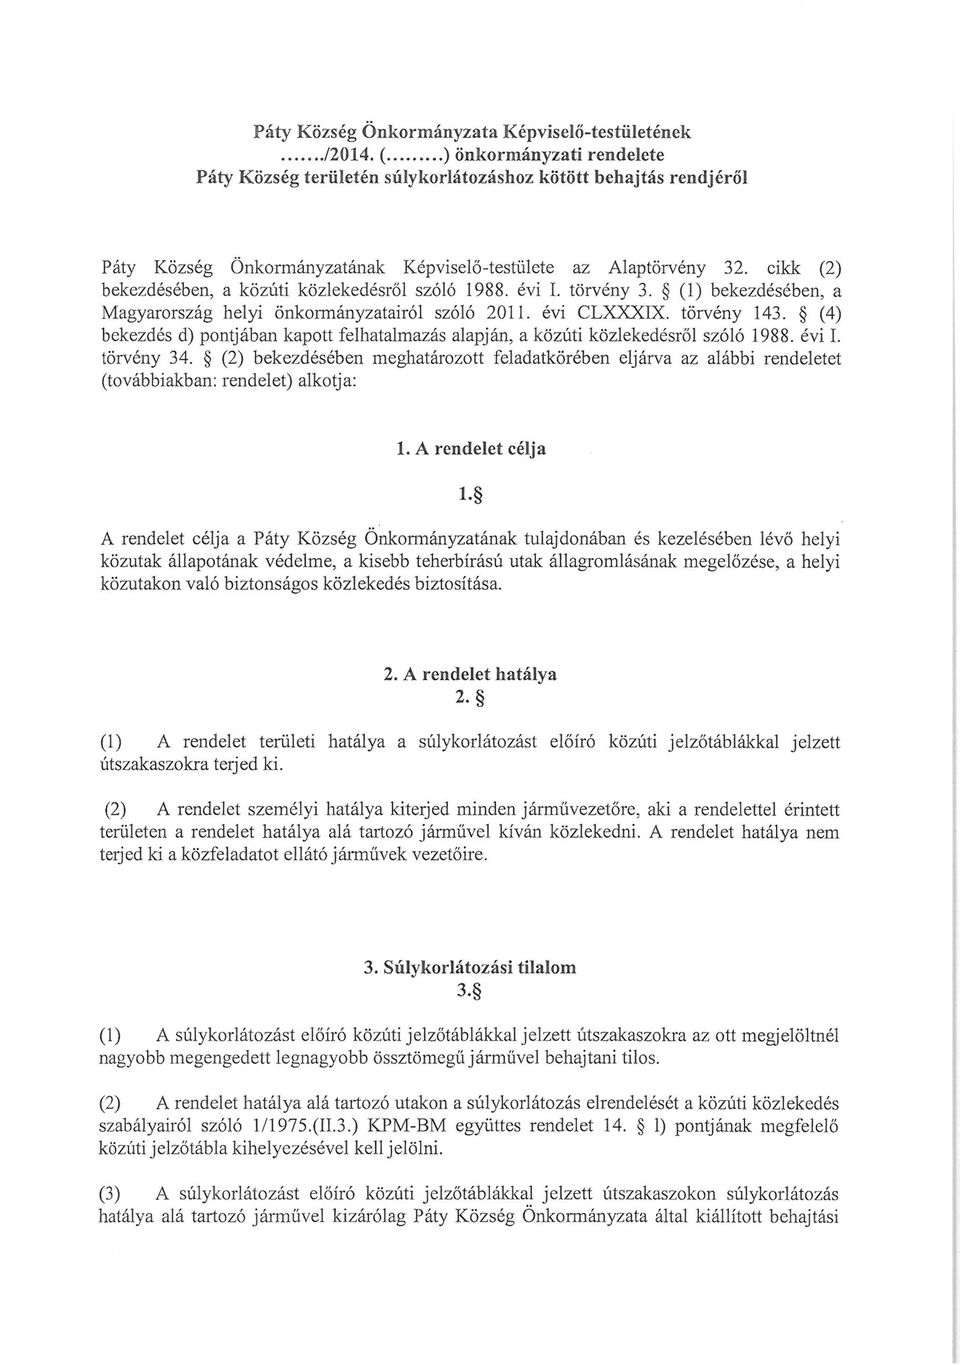 cikk (2) bekezdésében, a közúti közlekedésről szóló 1988. évi I. törvény 3. (1) bekezdésében, a Magyarország helyi önkormányzatairól szóló 2011. évi CLXXXIX. törvény 143.